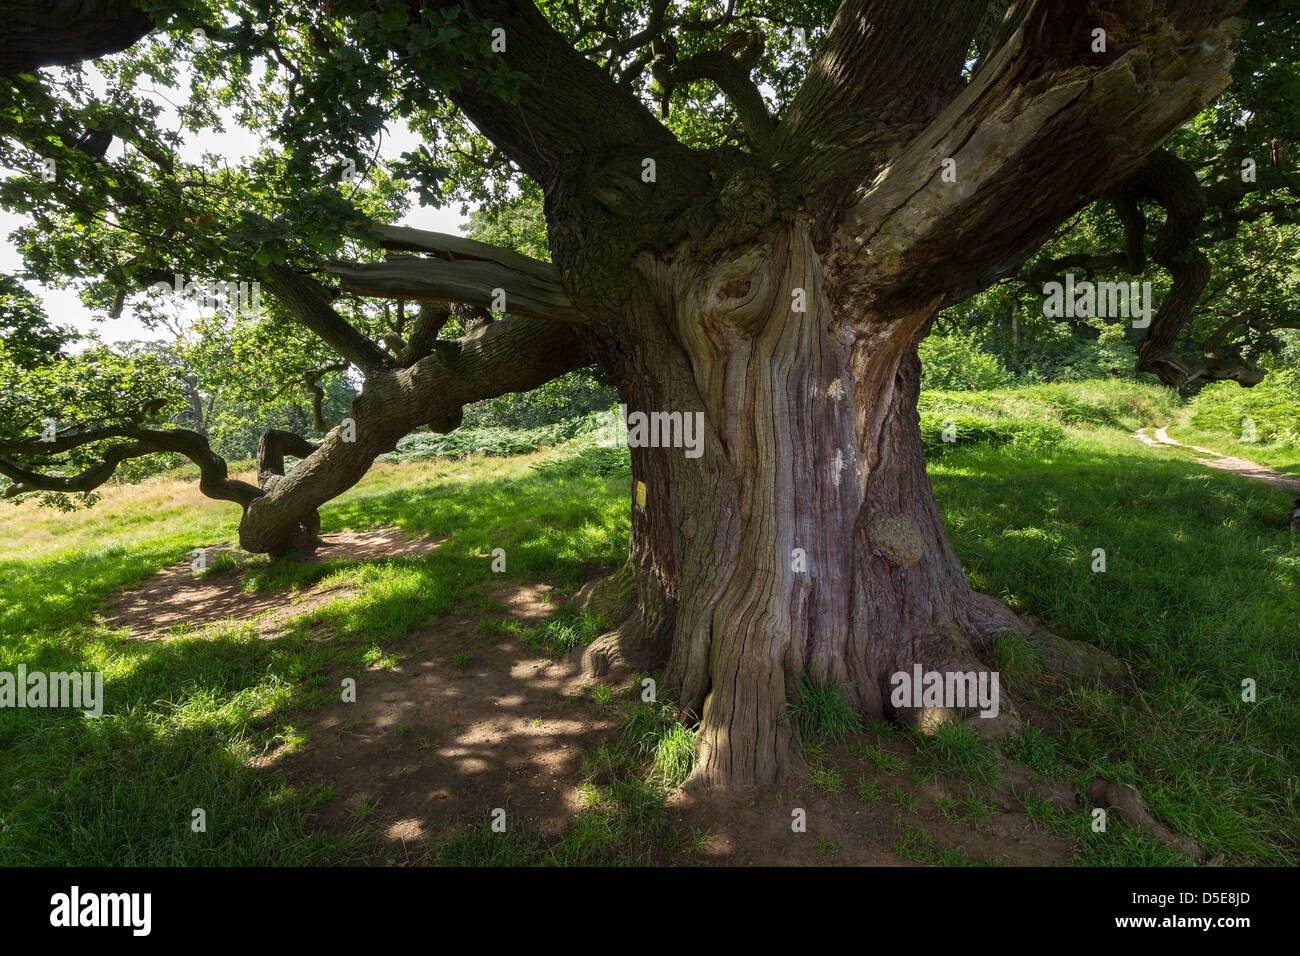 Arbre de chêne anglais antique dans la région de la forêt près de Calke Abbey, Ticknall, Derbyshire, Angleterre, RU Banque D'Images